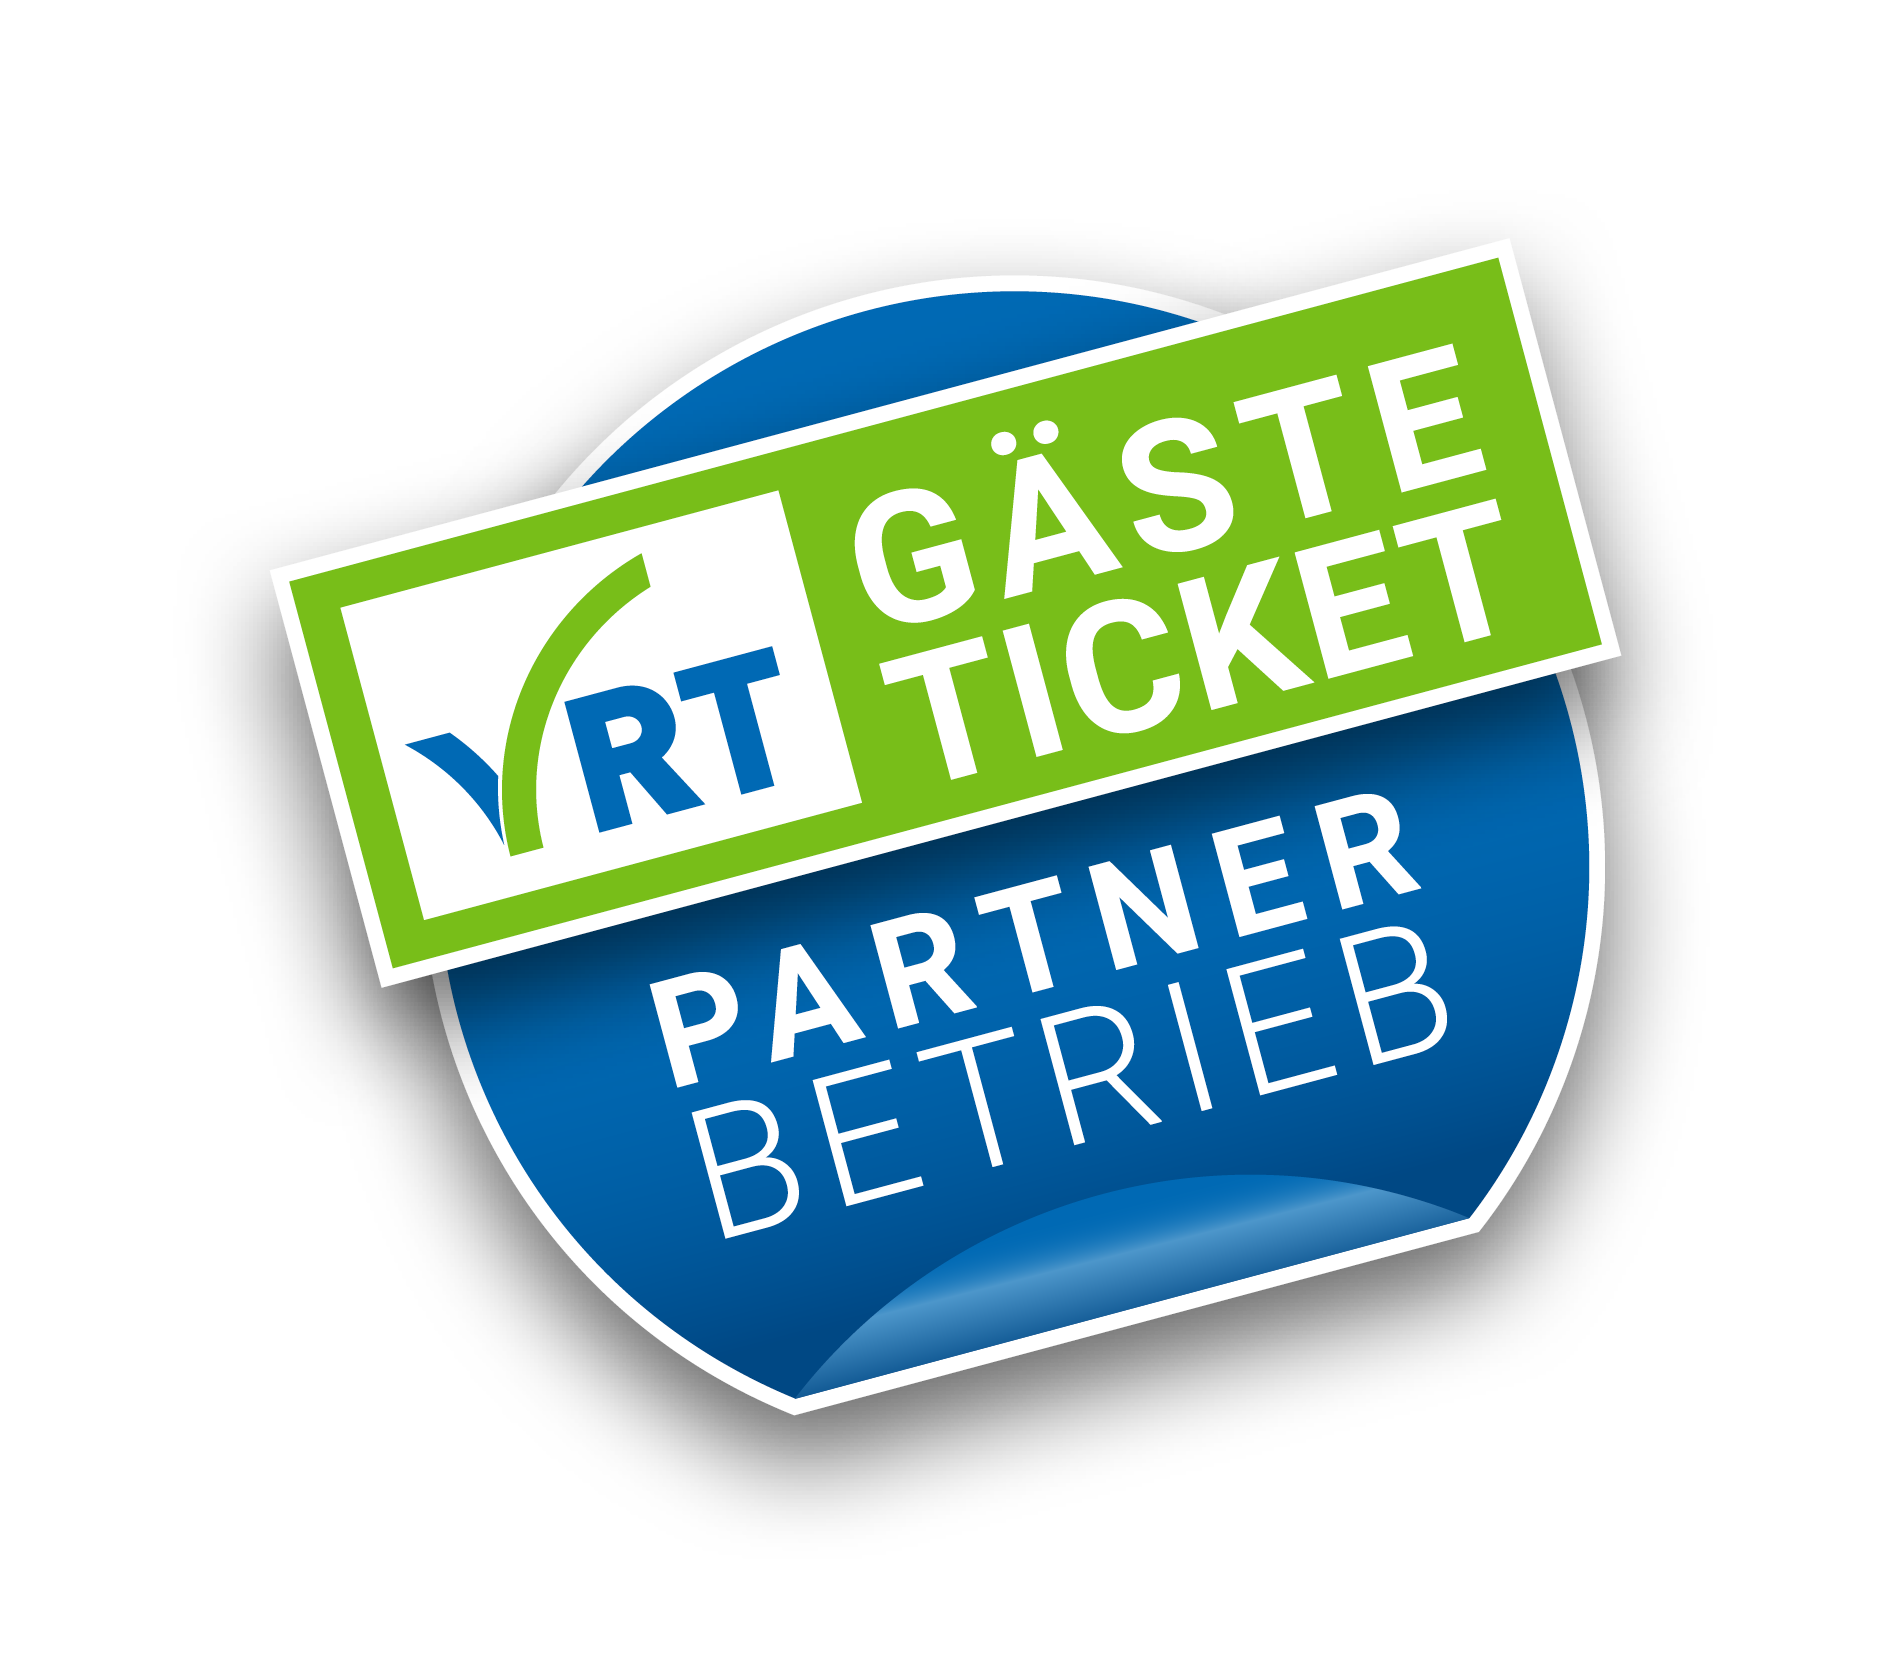 VRT-GaesteTicket-Signet_RGB_ohne Hintergrund